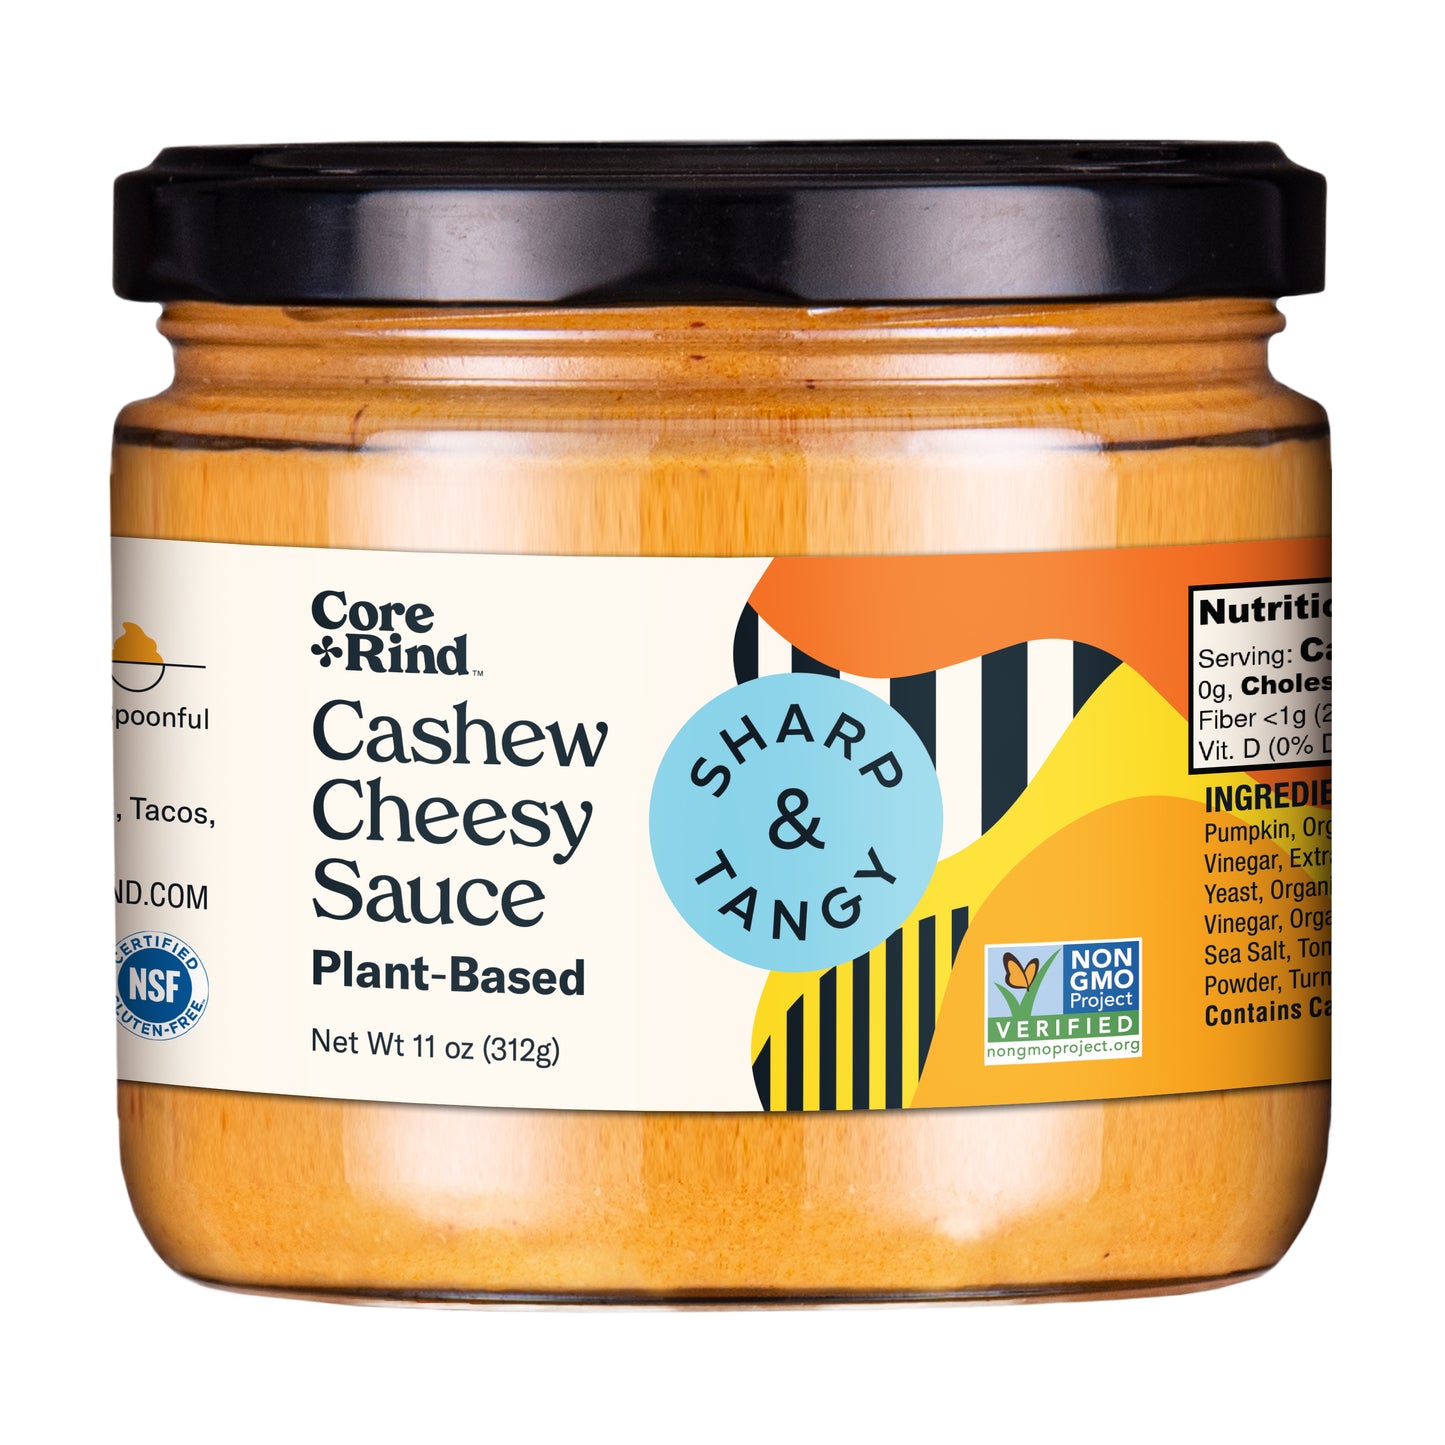 Cashew Cheesy Sauce - Sharp & Tangy